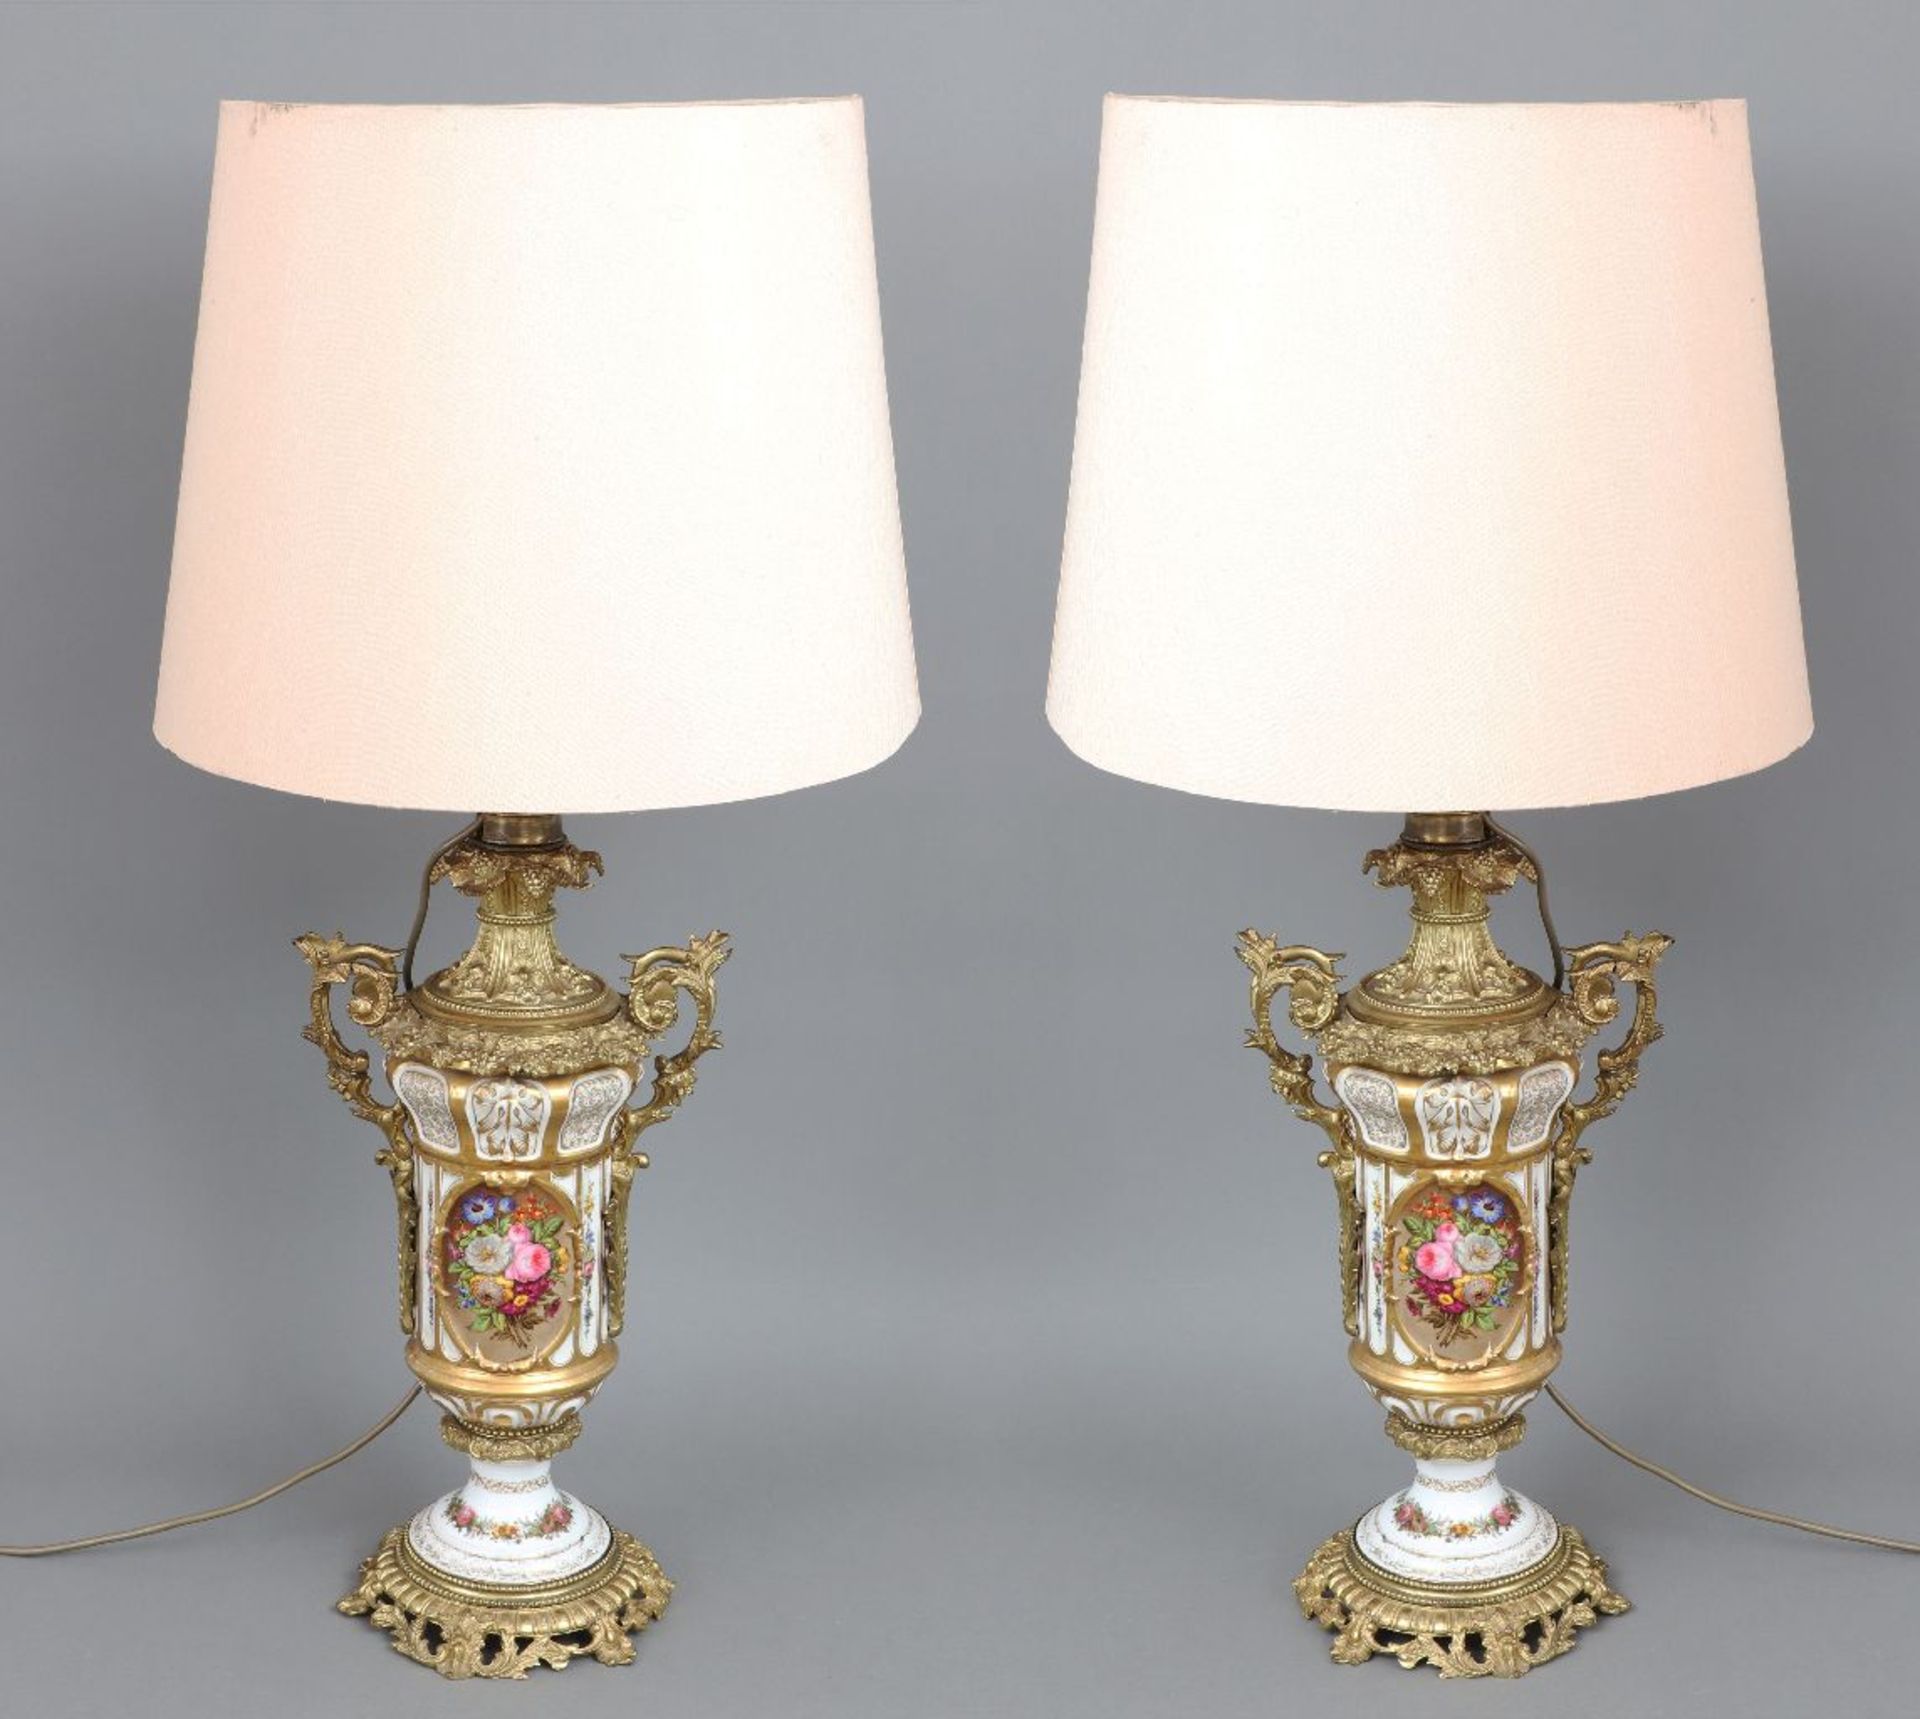 Paar prunkvolle Tischlampen mit Porzellanfüßen in Form von Vasengefäßen - Image 2 of 4